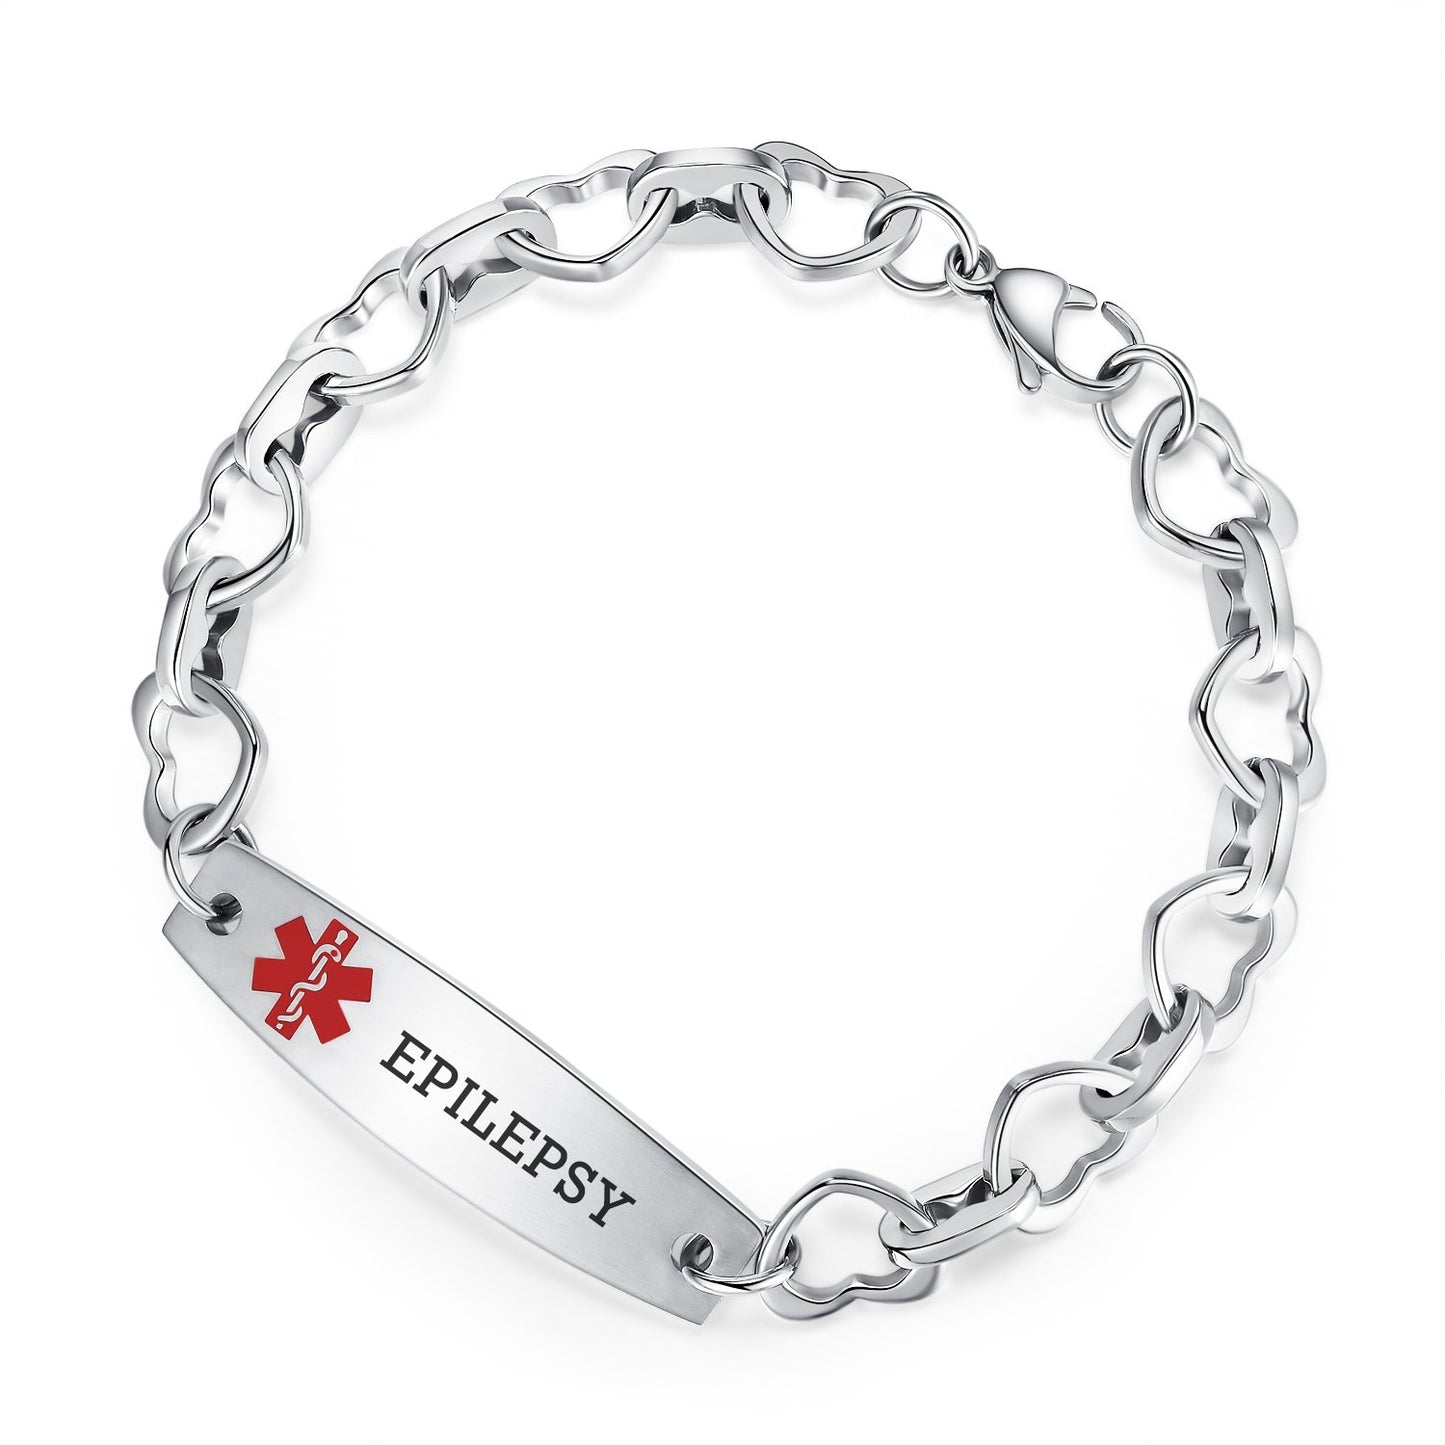 Who should wear a medical alert bracelet? | Mediband Blog